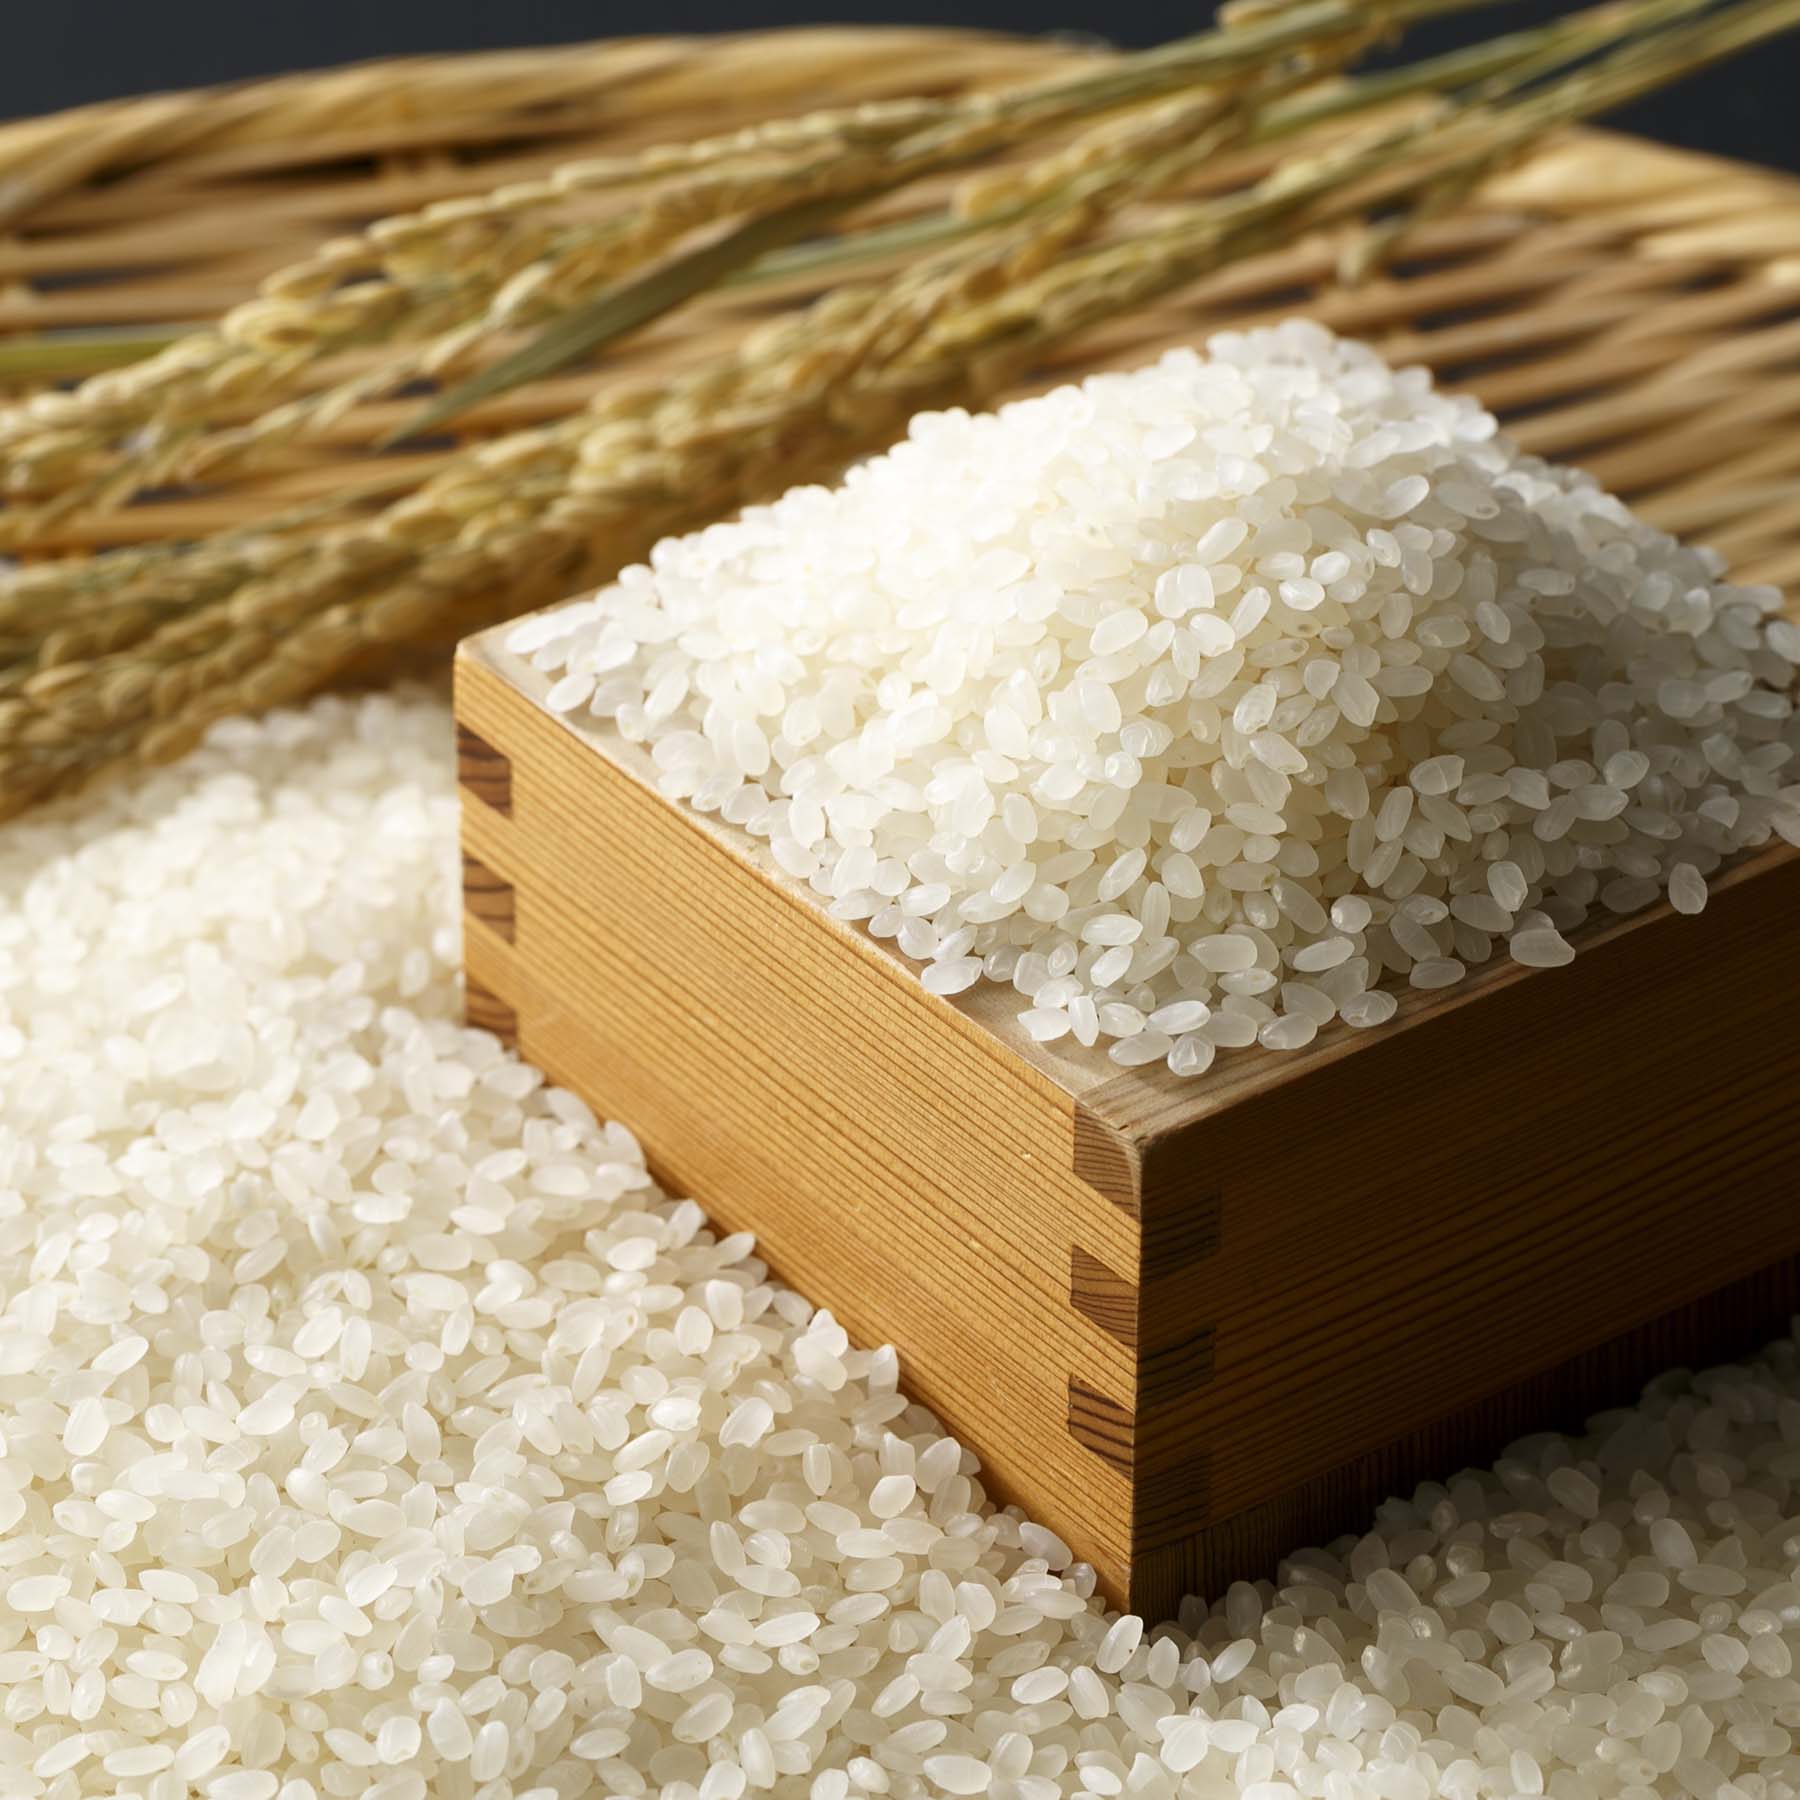 こだわり特別栽培米セットB 5kg×2袋 定期便12回